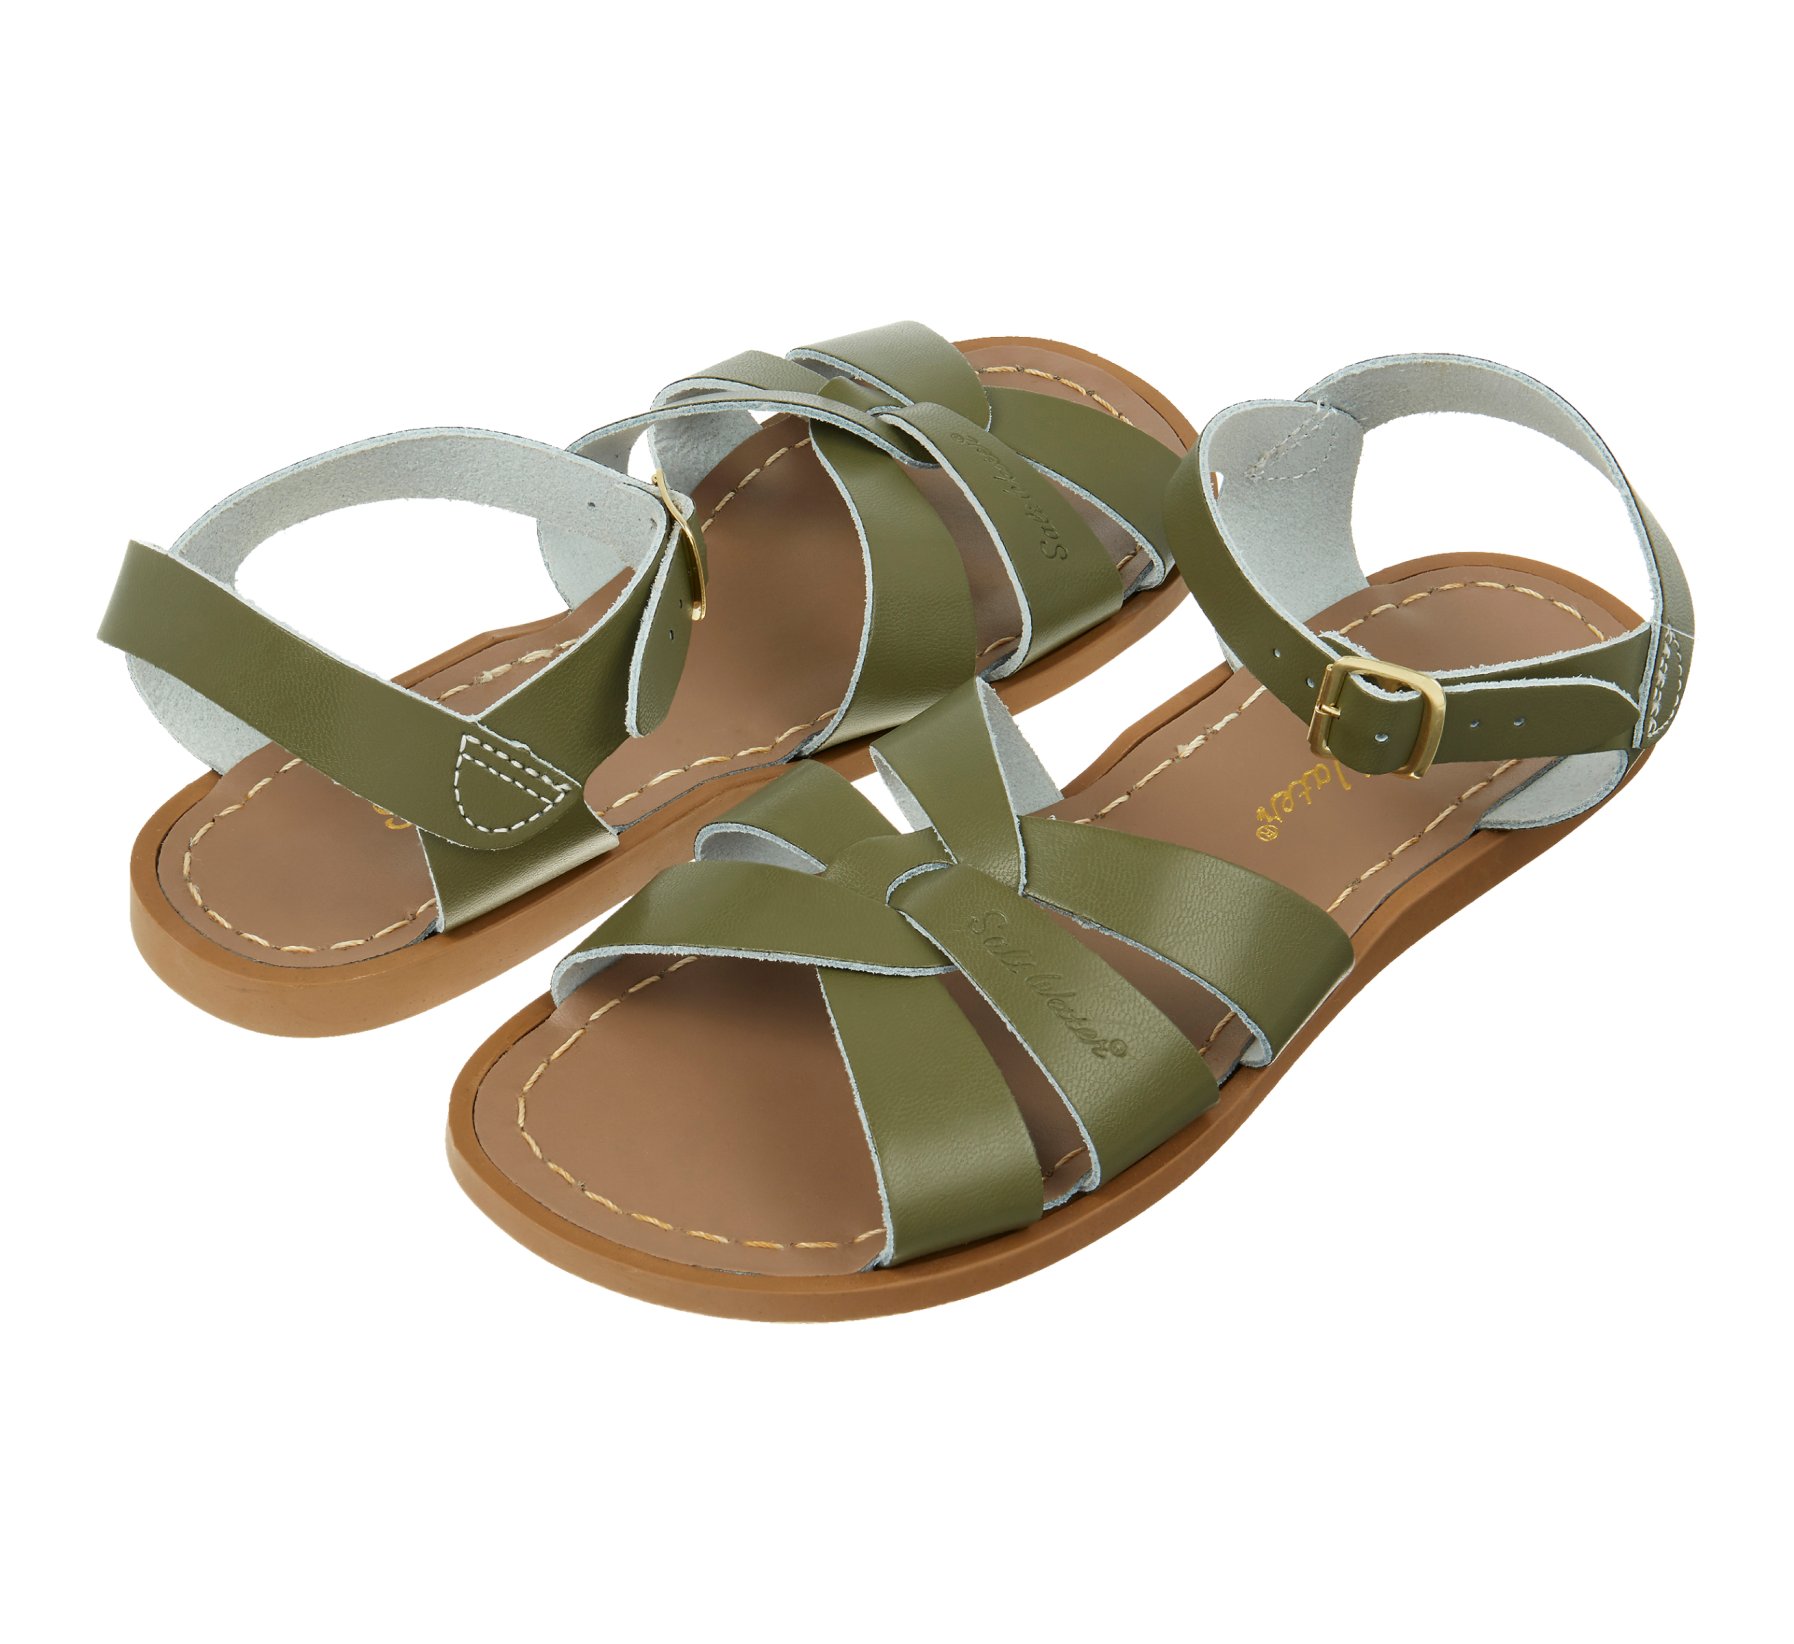 Original Olive Sandal - Salt Water Sandals